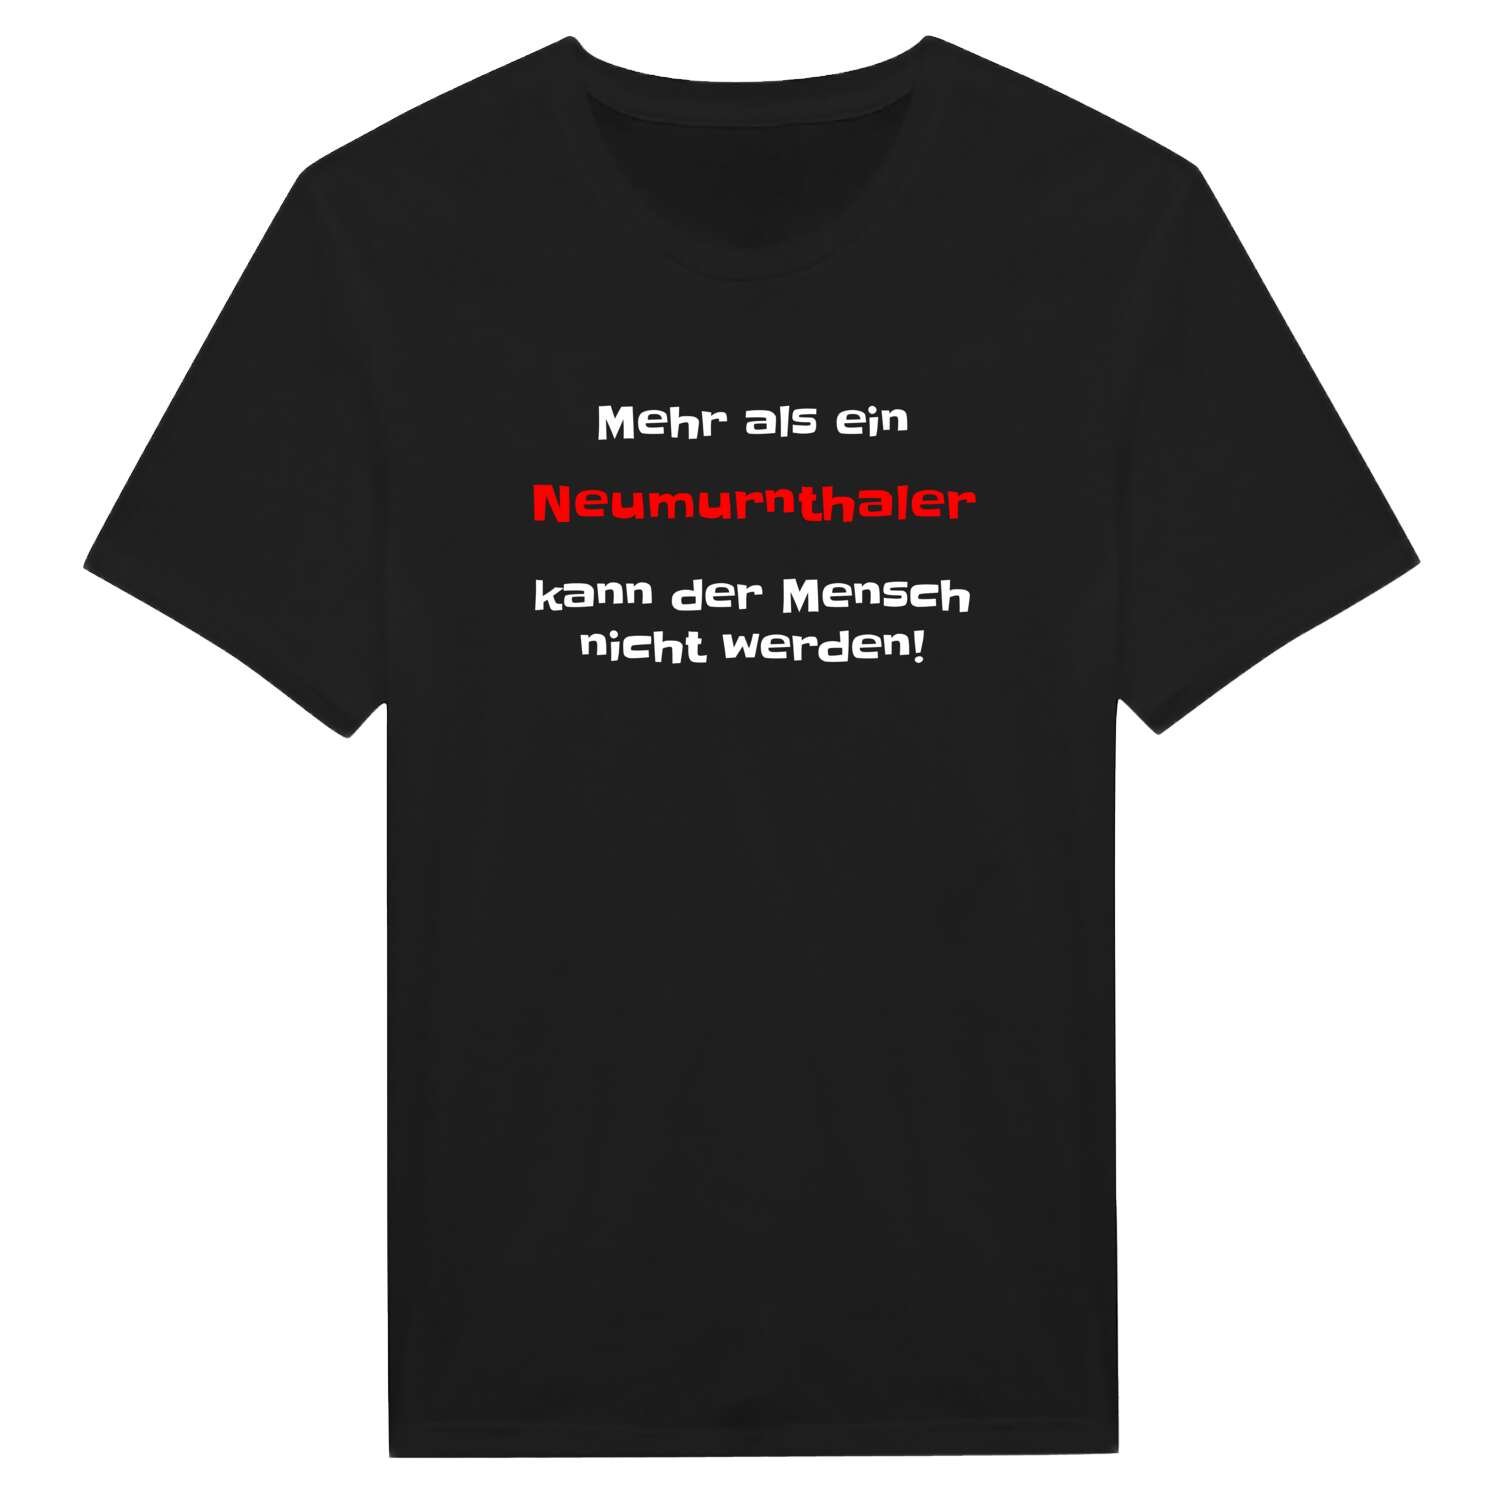 Neumurnthal T-Shirt »Mehr als ein«